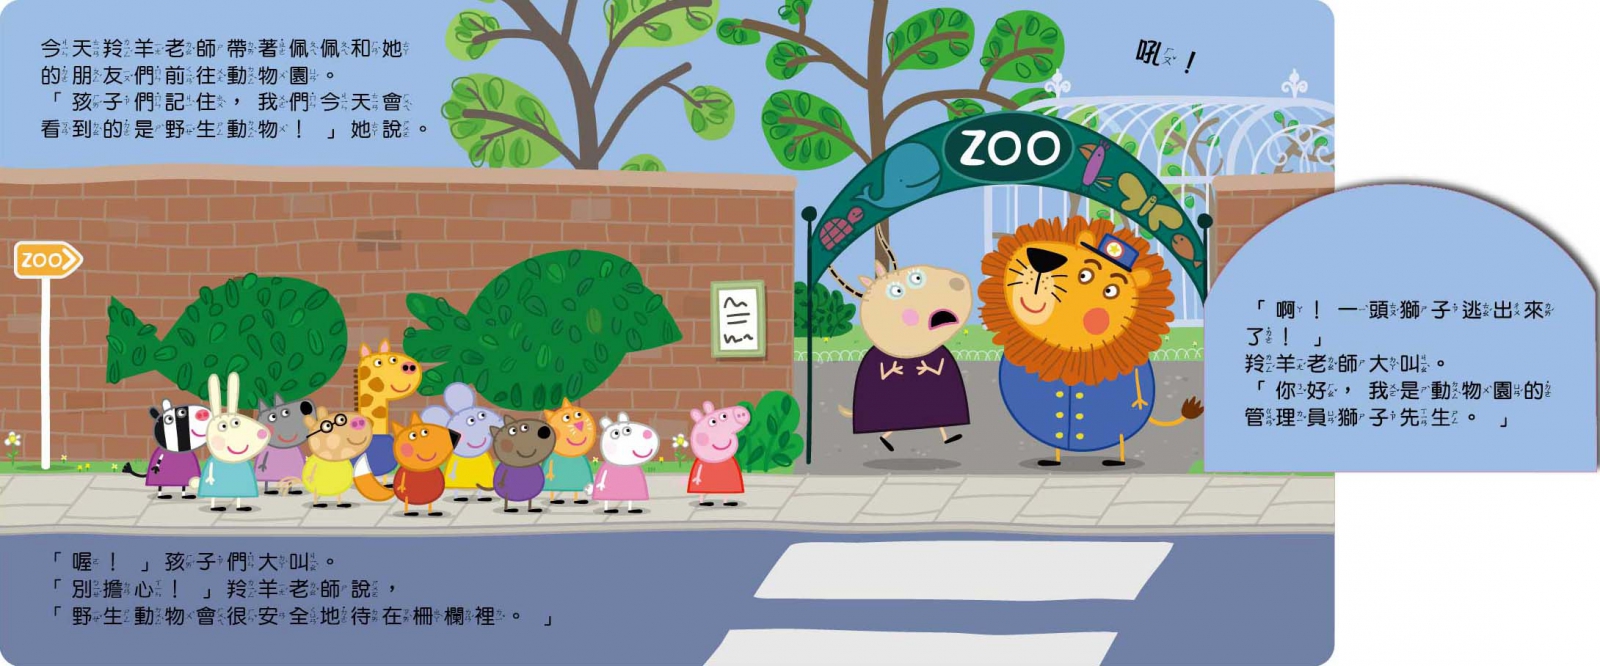 粉紅豬小妹 來去動物園可愛翻翻書